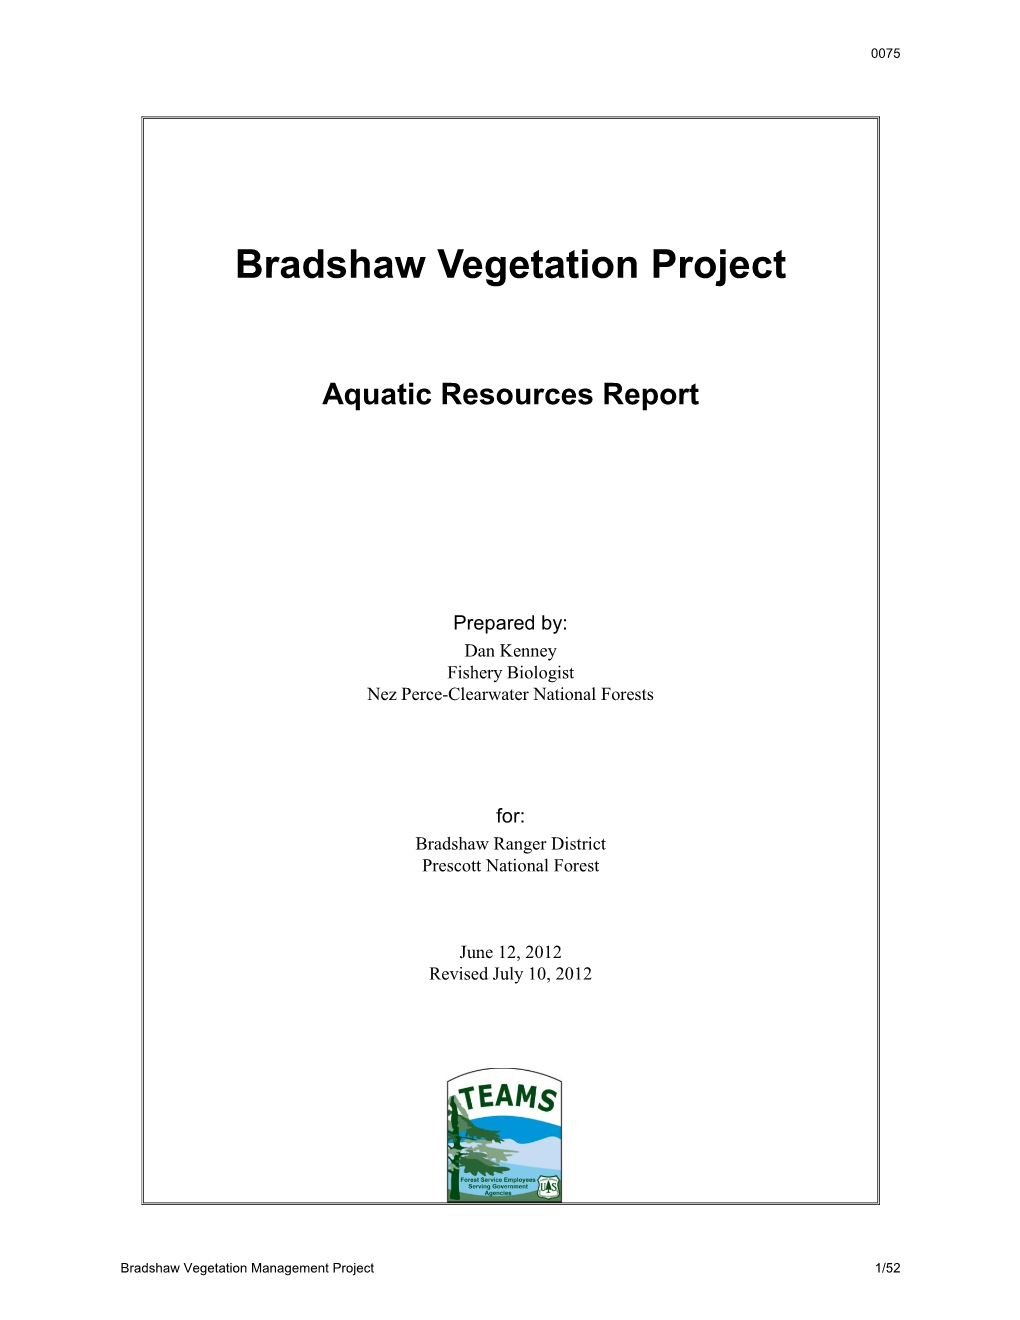 Bradshaw Vegetation Management Aquatics Report